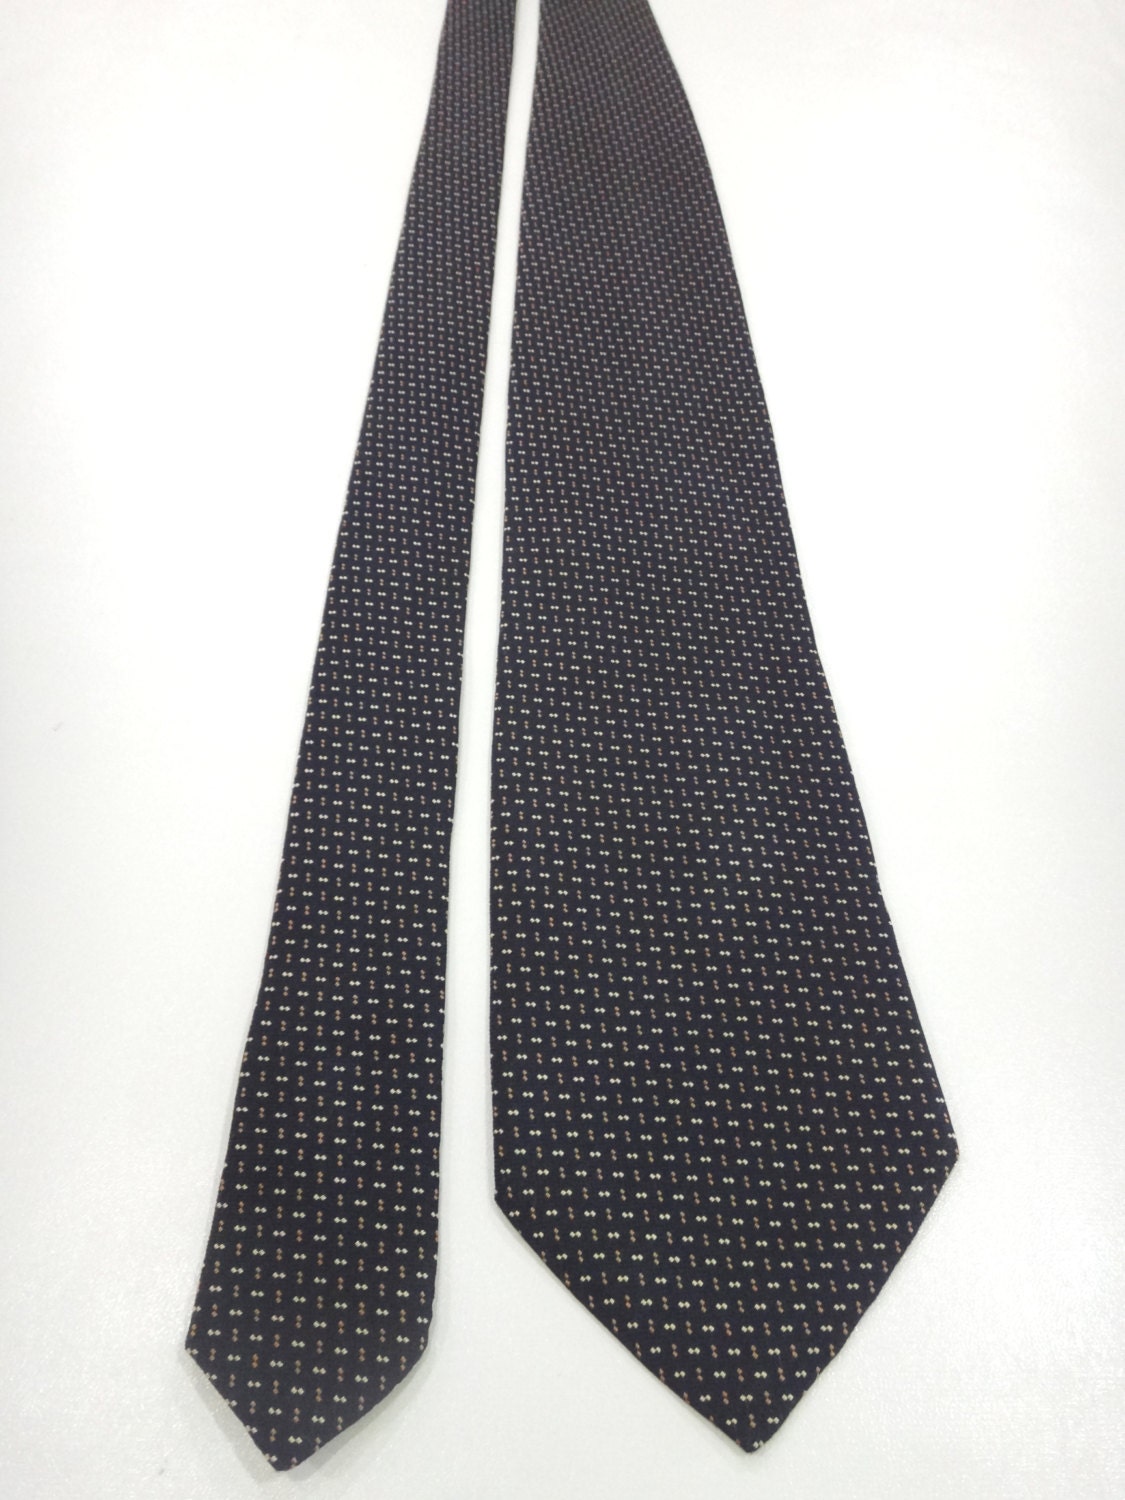 DKNY Small Dot Geometric Pattern Silk Necktie Made in Japan G – Haute Juice